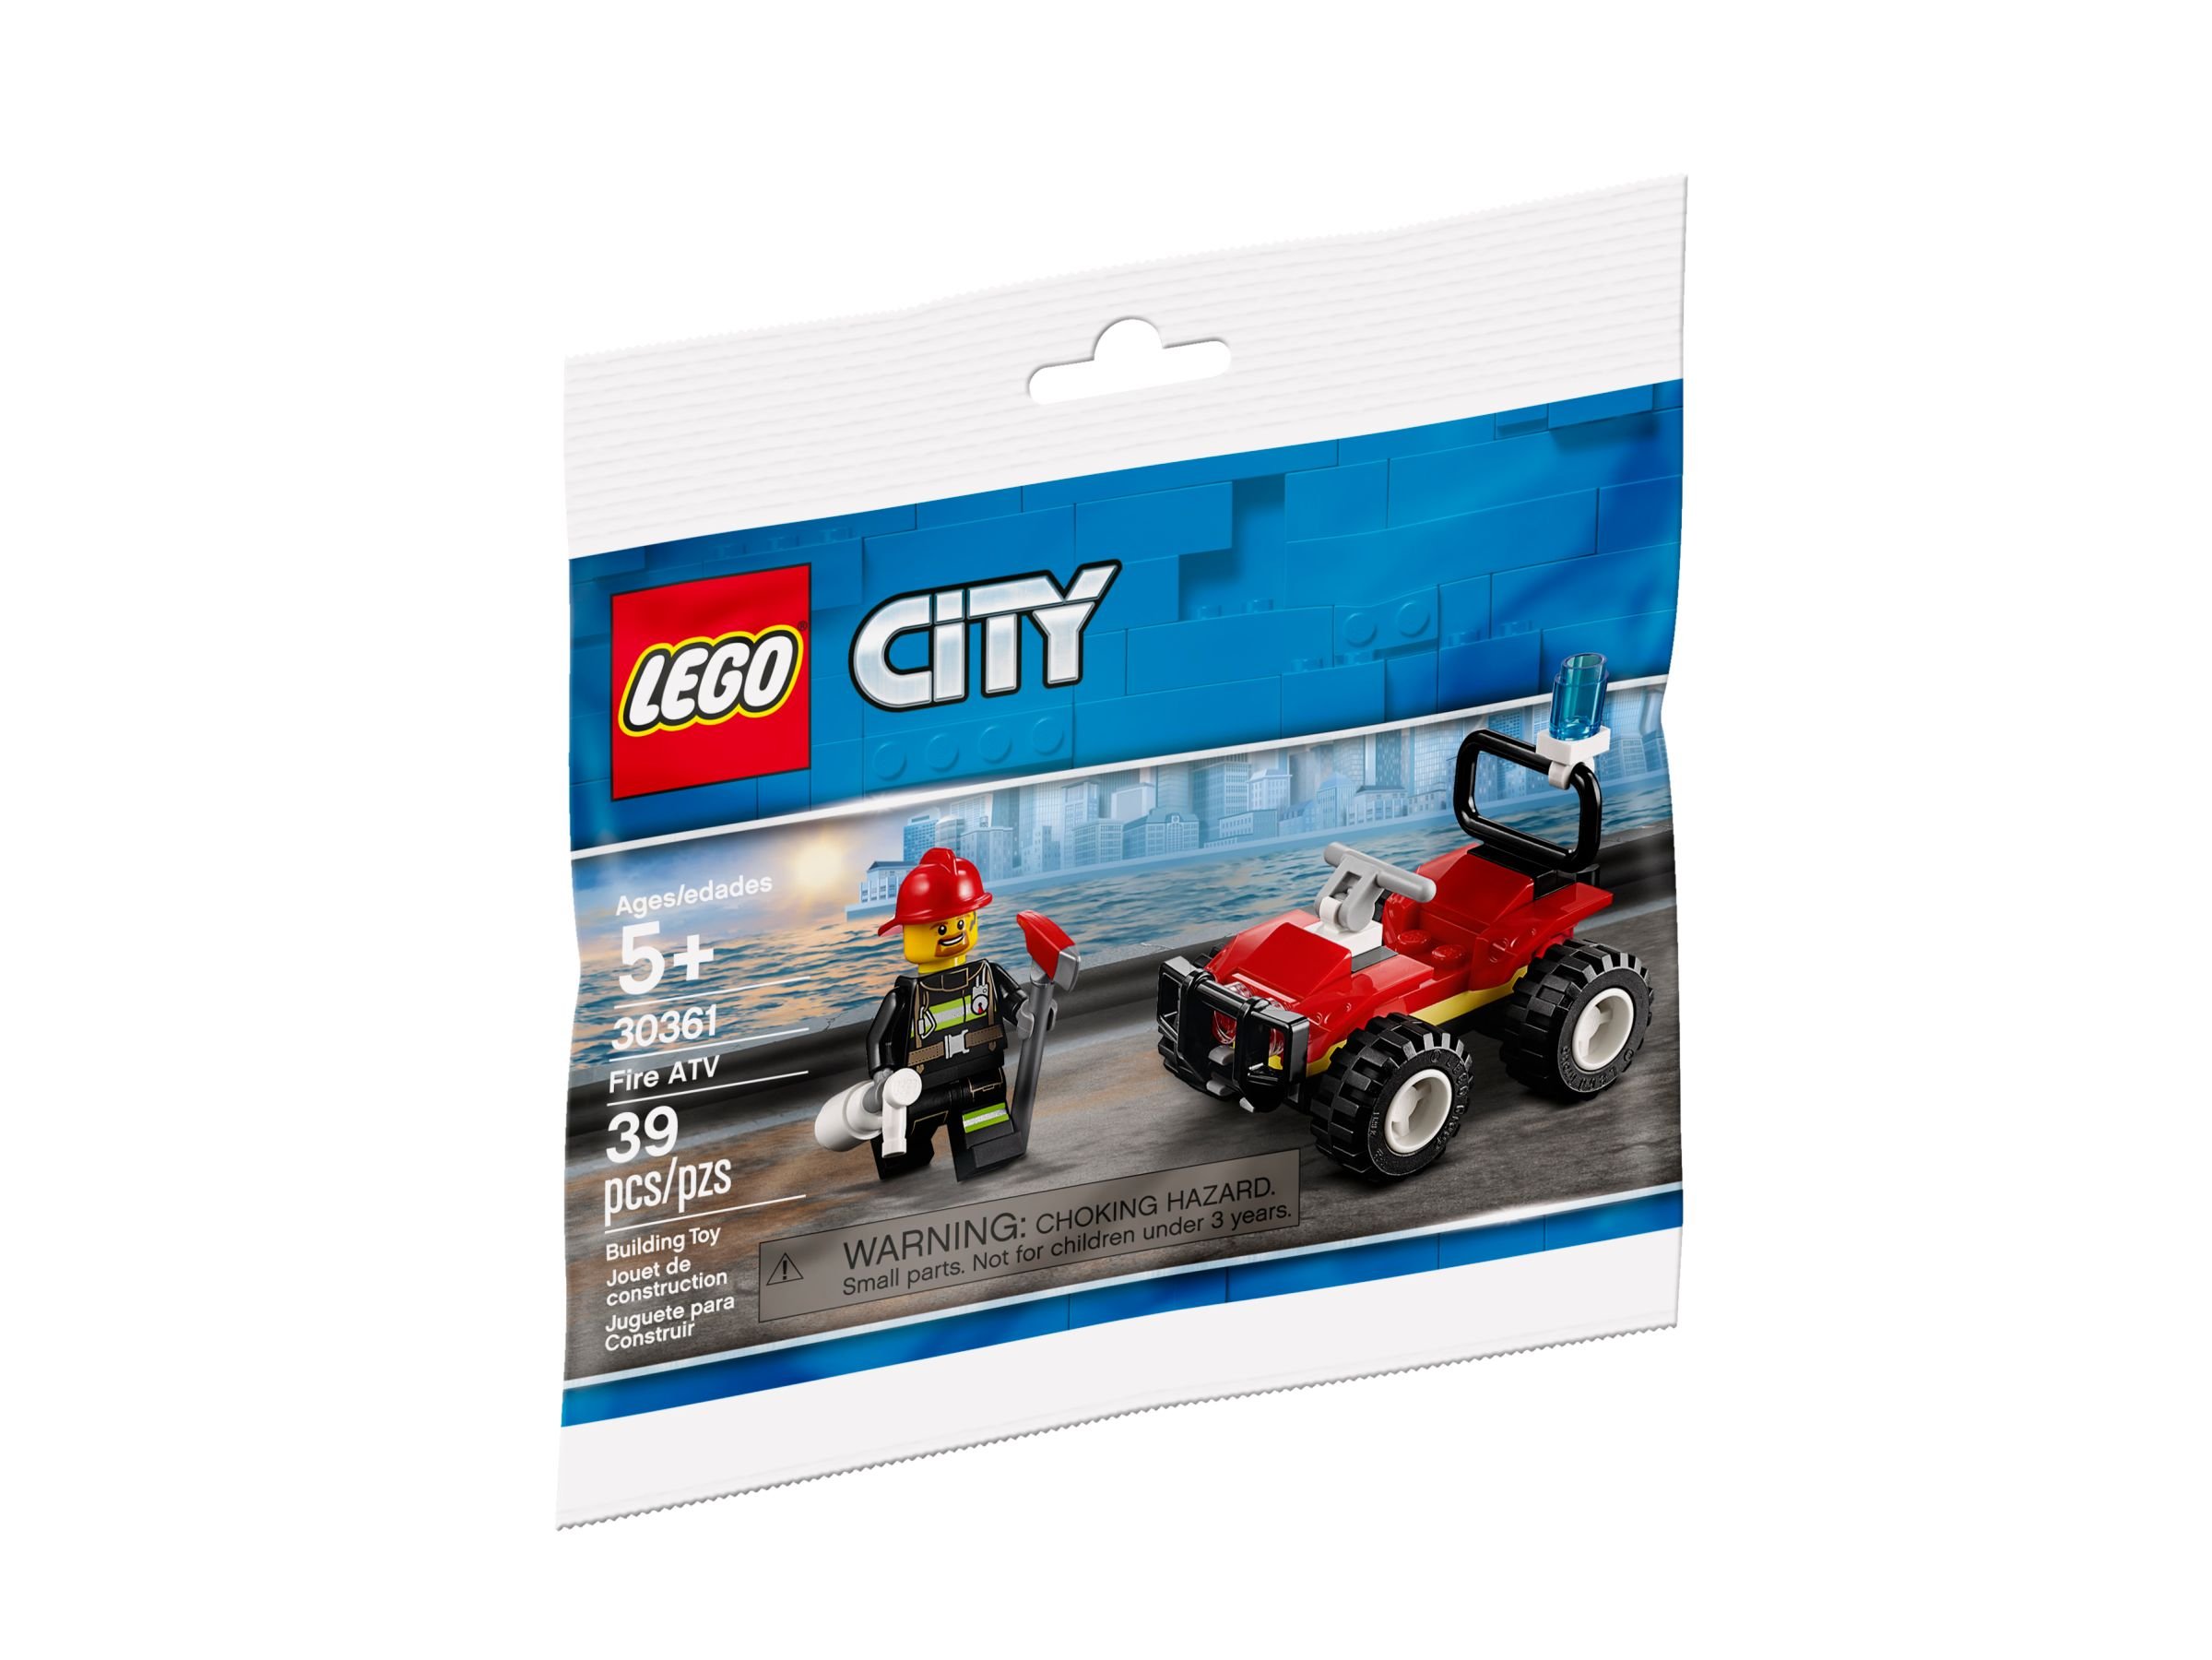 LEGO City 30361 Feuerwehr Quad Polybag LEGO_30361_alt1.jpg